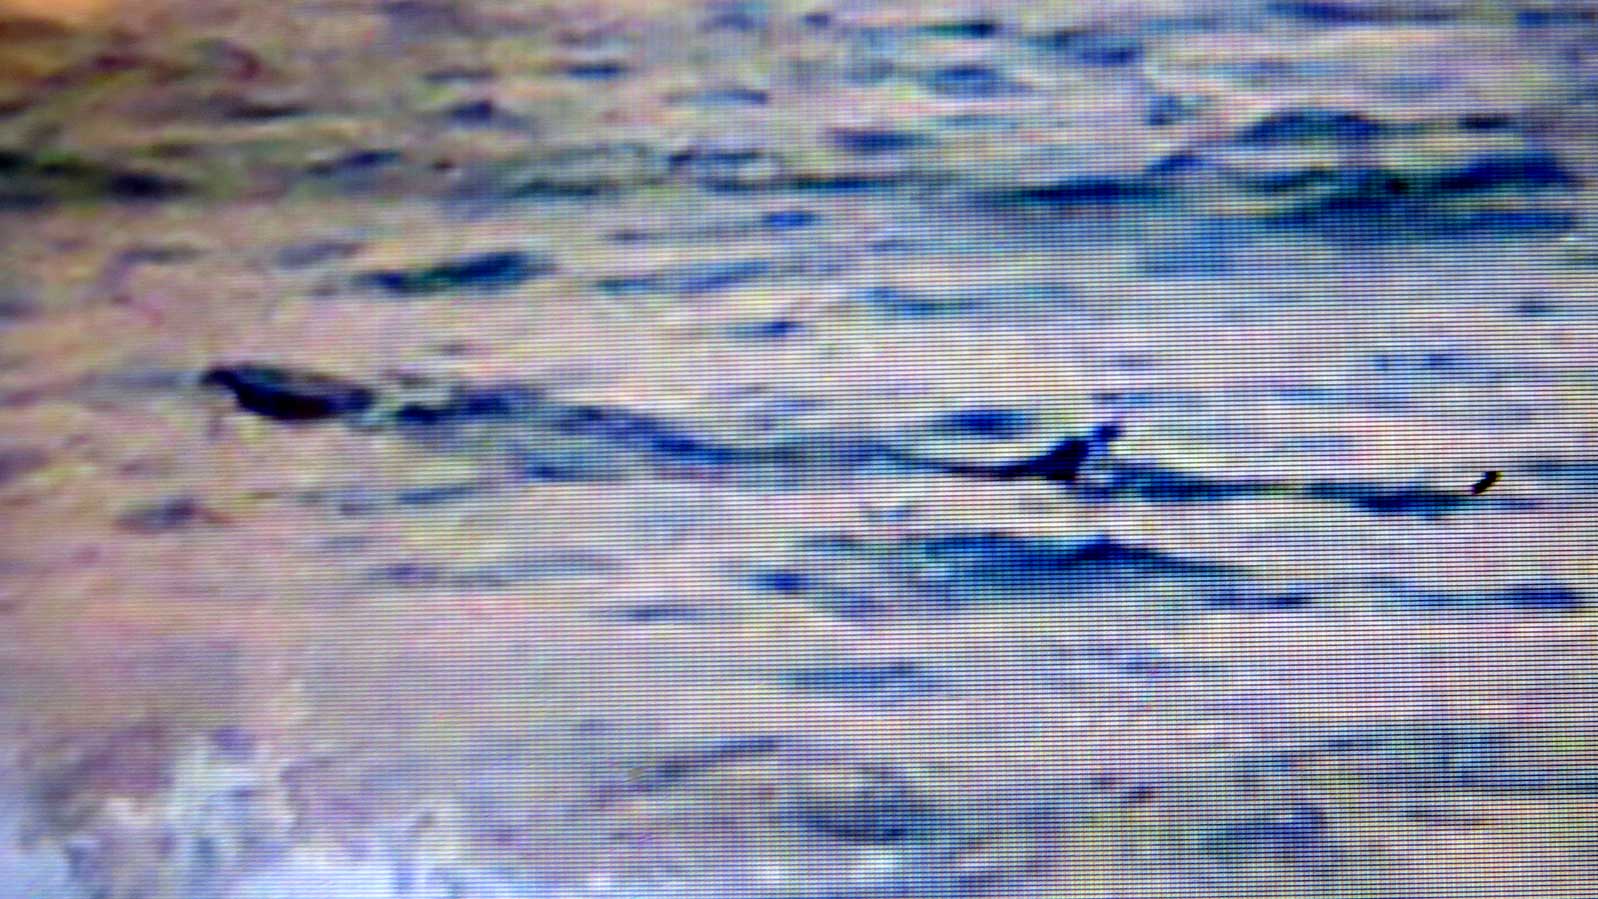 Đội quản lý trật tự tuyến biển TP.Tuy Hòa đã chụp được hình cá lạ xuất hiện ở gần bờ biển Tuy Hòa - Ảnh: Đức Huy